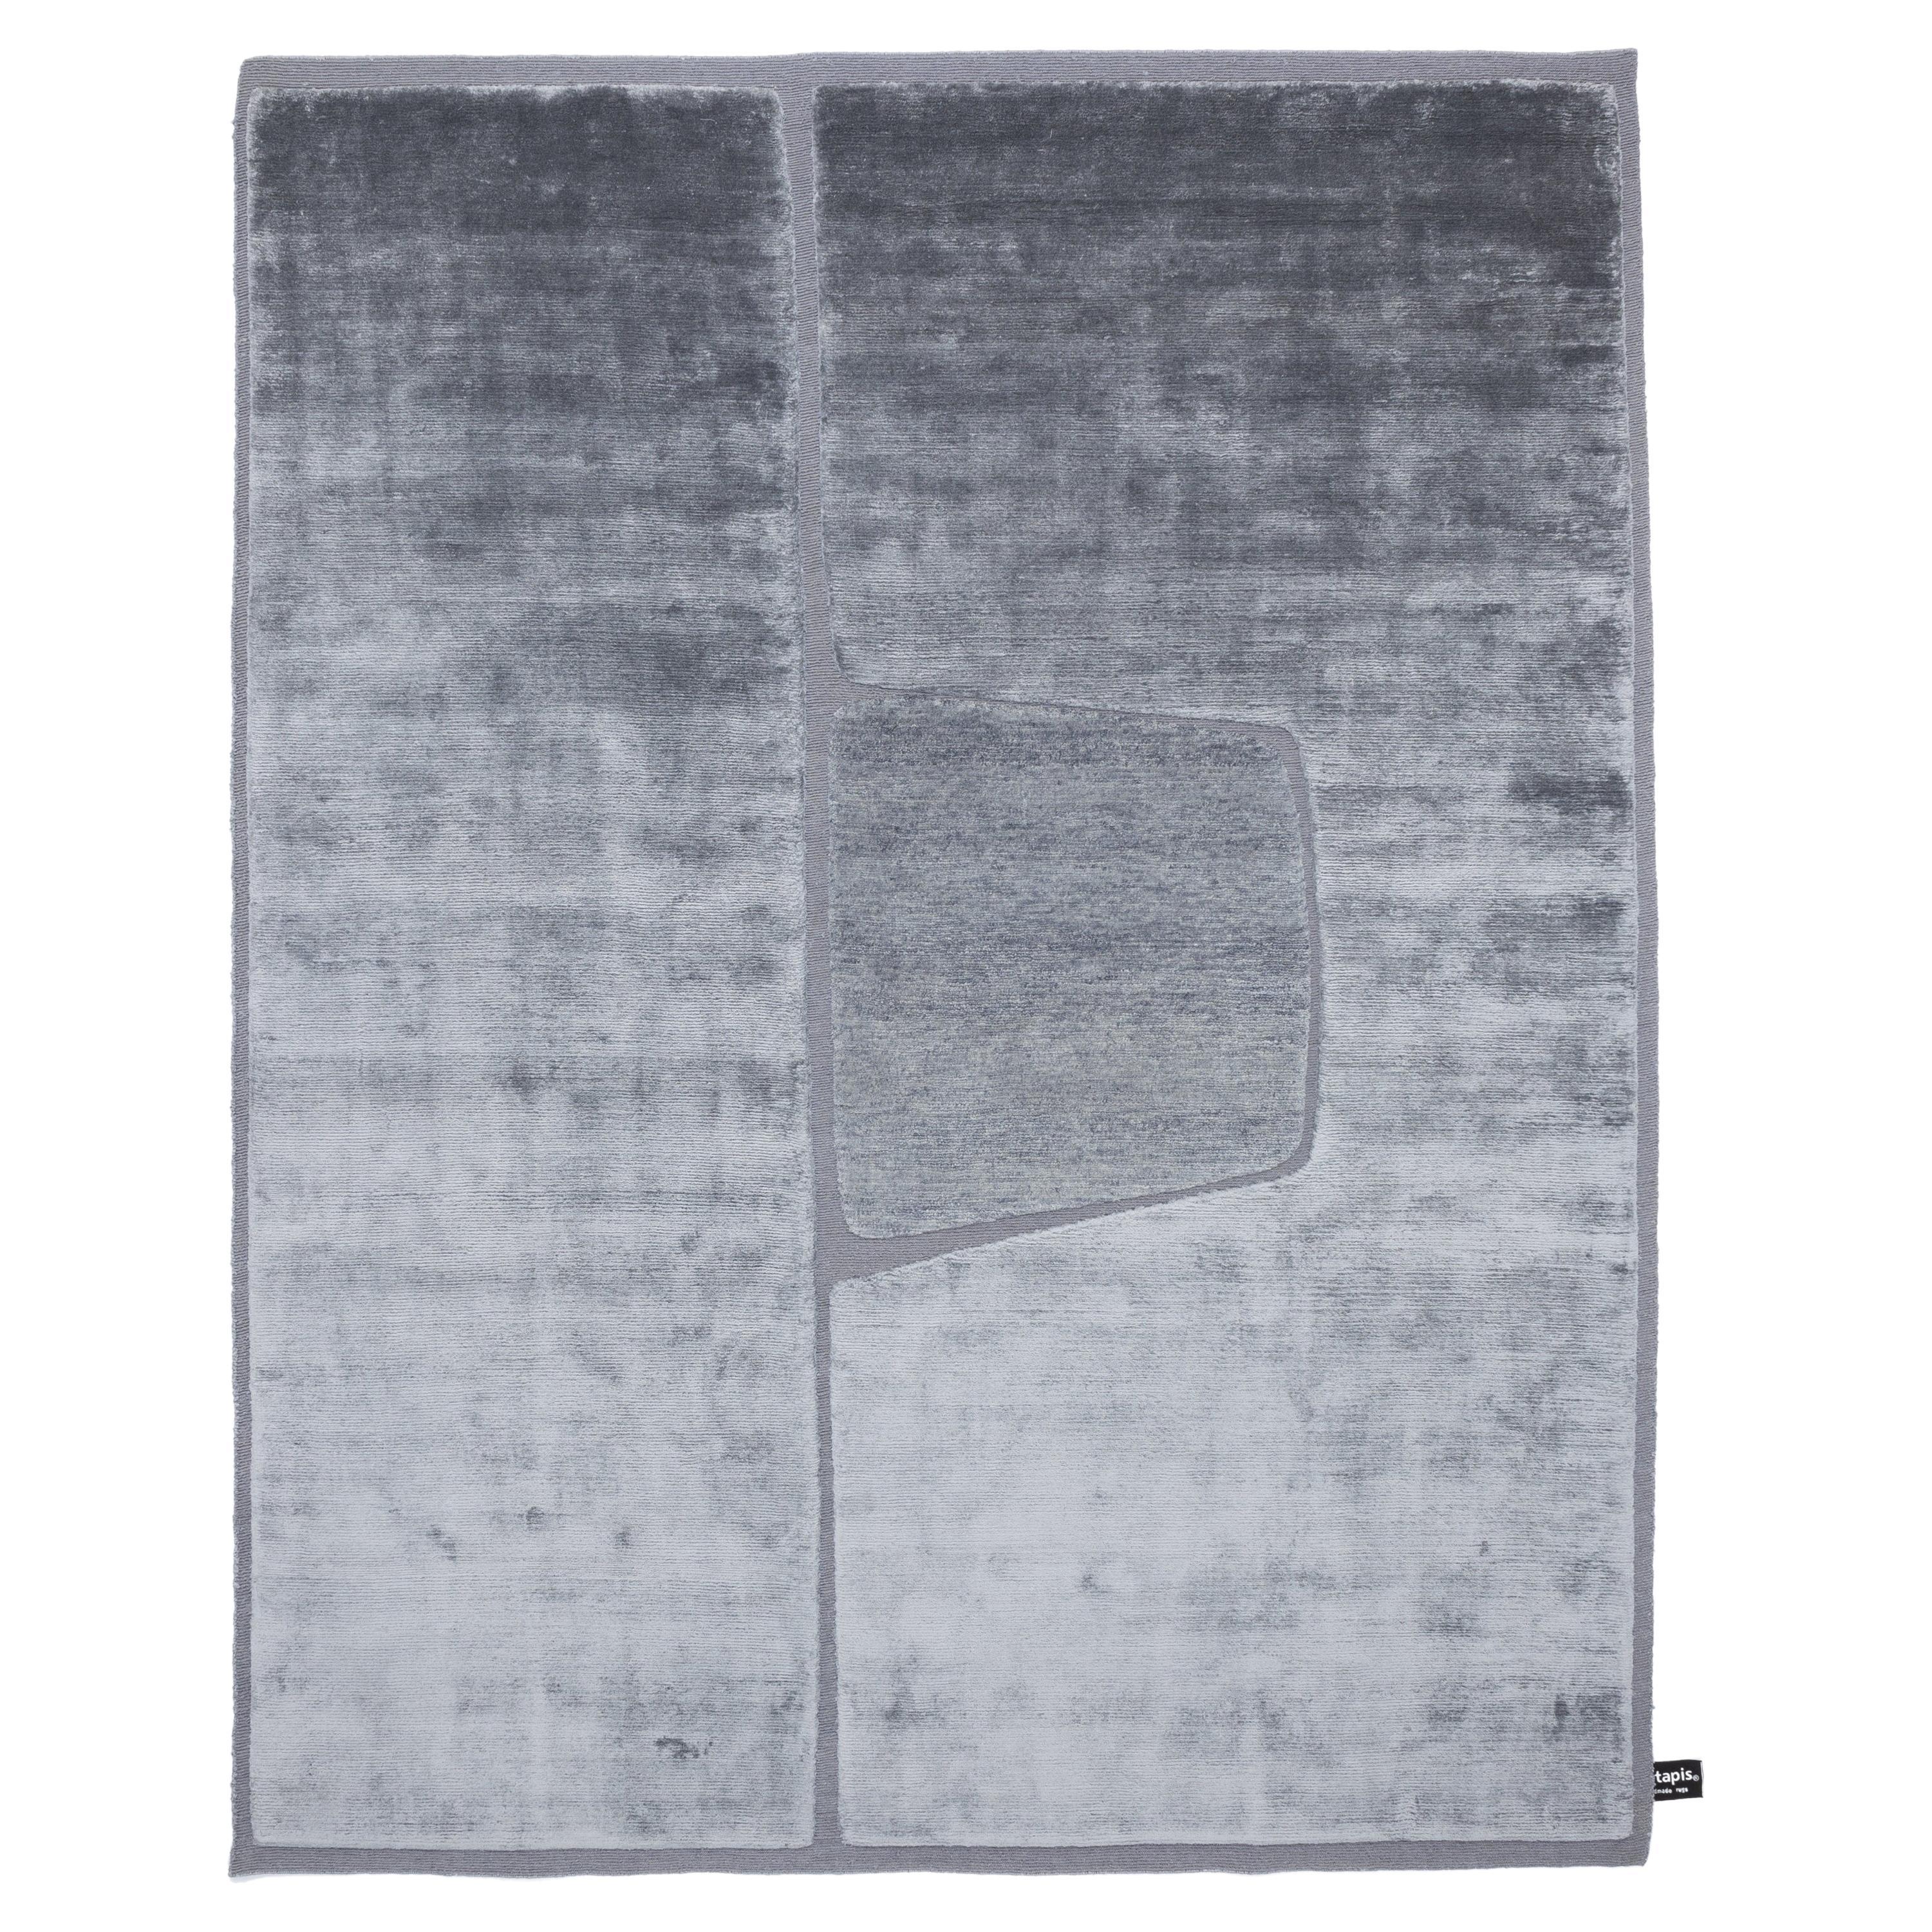 Monocromo-Teppich mit Ausschnitt von A. Parisotto und M. Formenton, cc-tapis